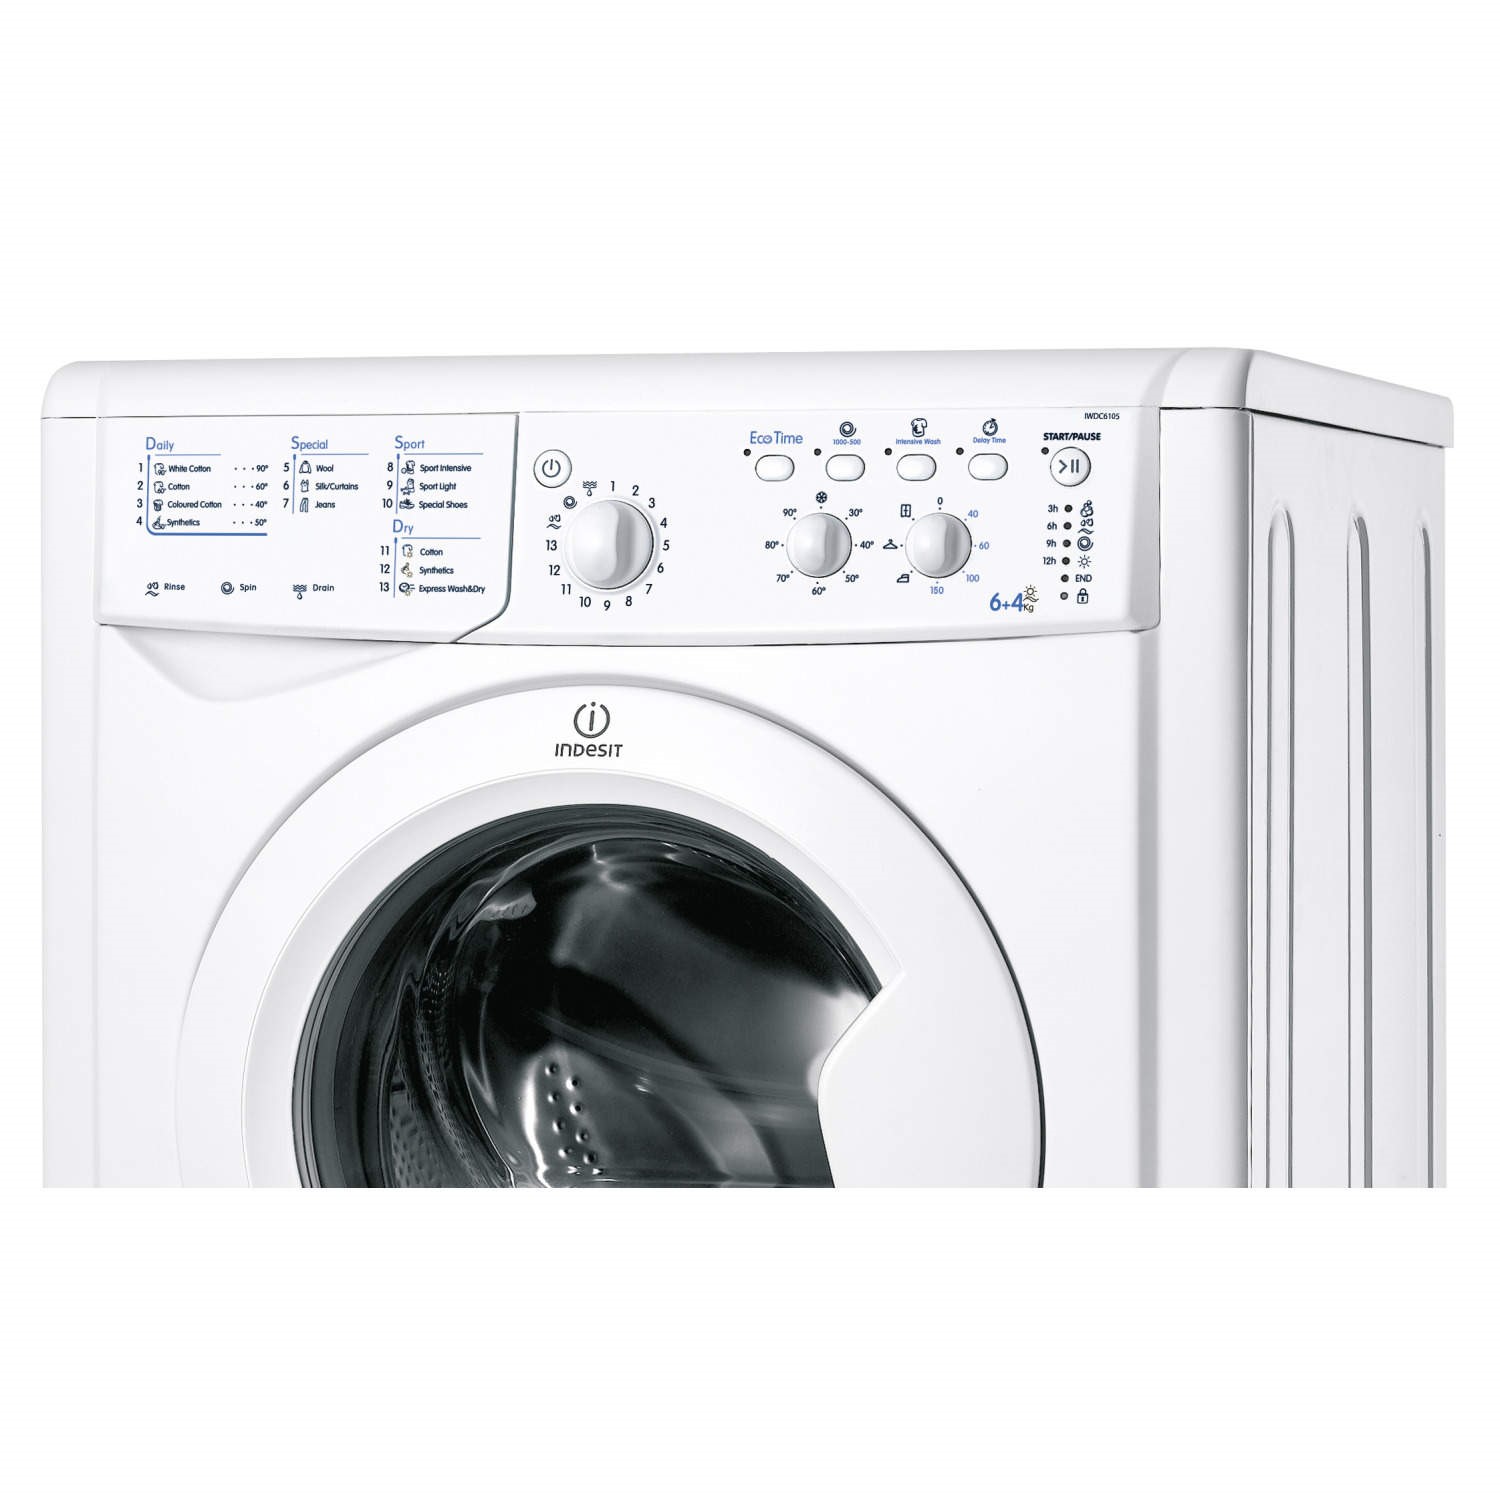 IWDC6125S 6KG / 5KG 1200 Spin Washer Dryer